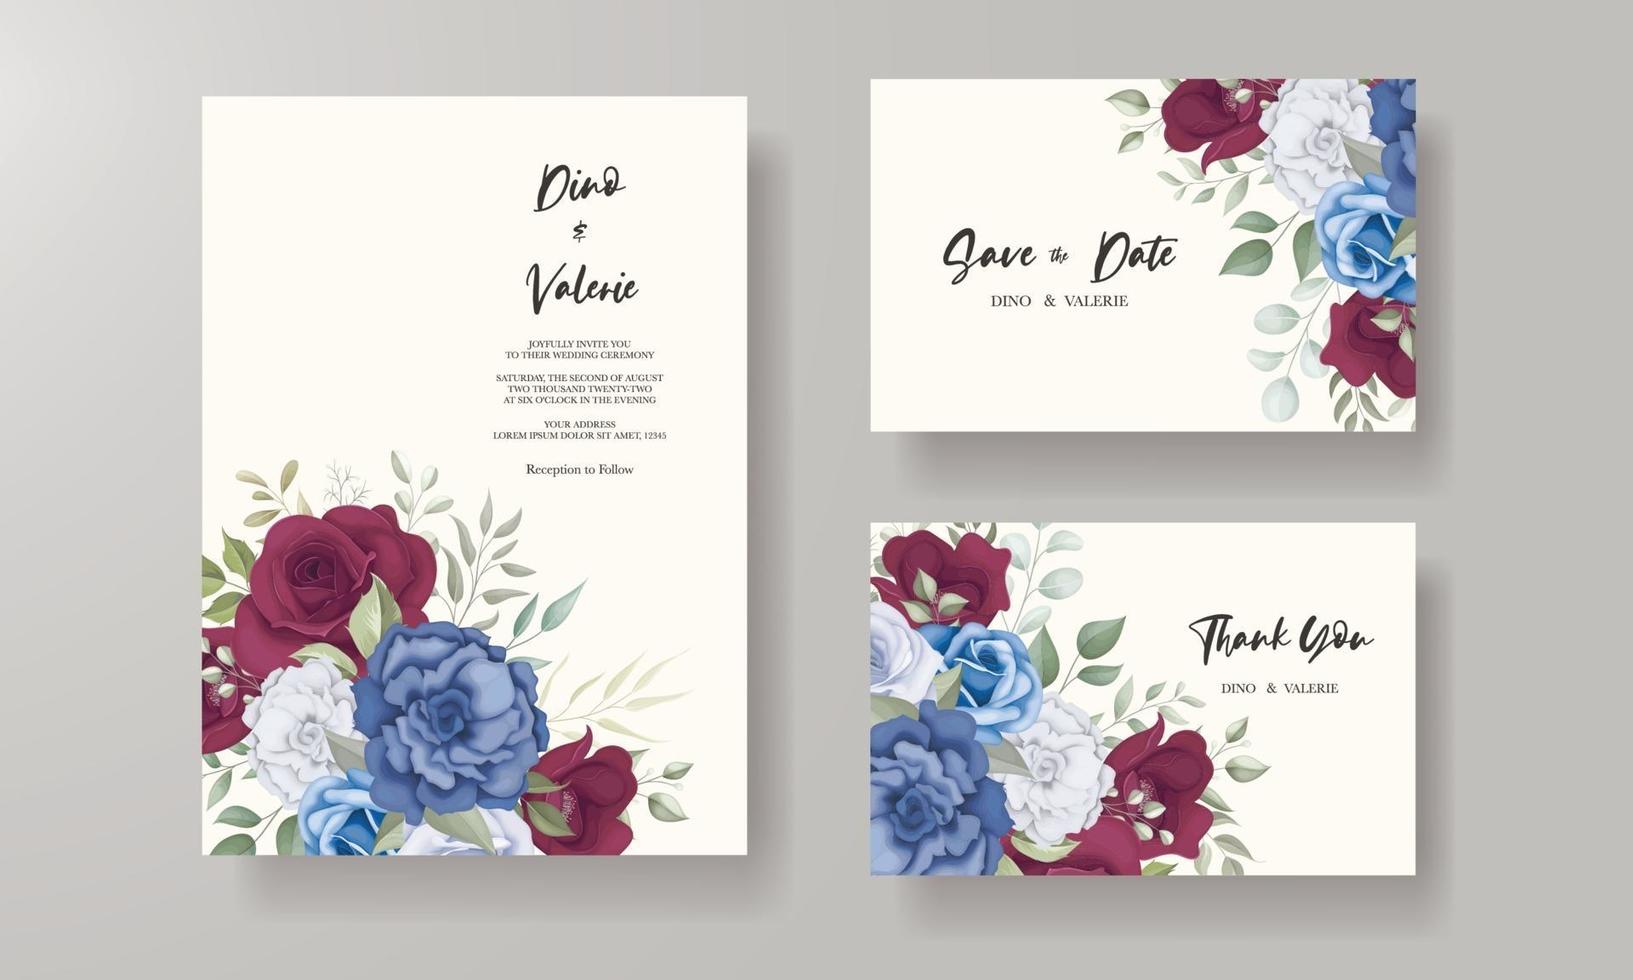 elegante tarjeta de invitación de boda con adornos de rosas vector